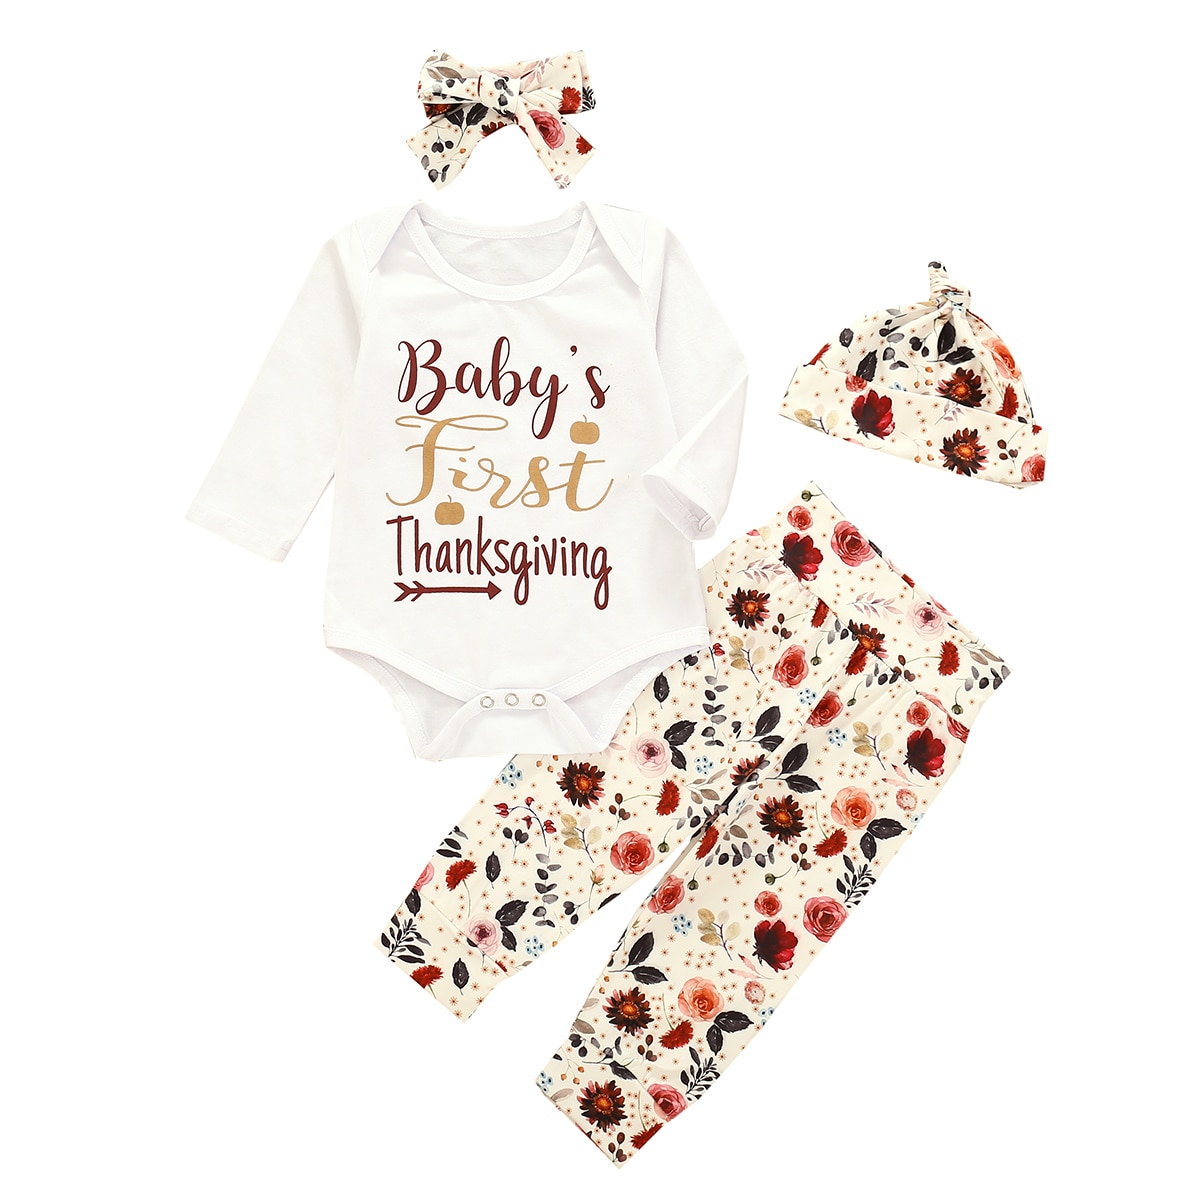 Pasgeboren Baby 'S Thanksgiving Day Kleding Leuke Outfit Voor Peuter Meisje Lente Herfst Outifts Bodysuits Broek Hoofdband Hoeden